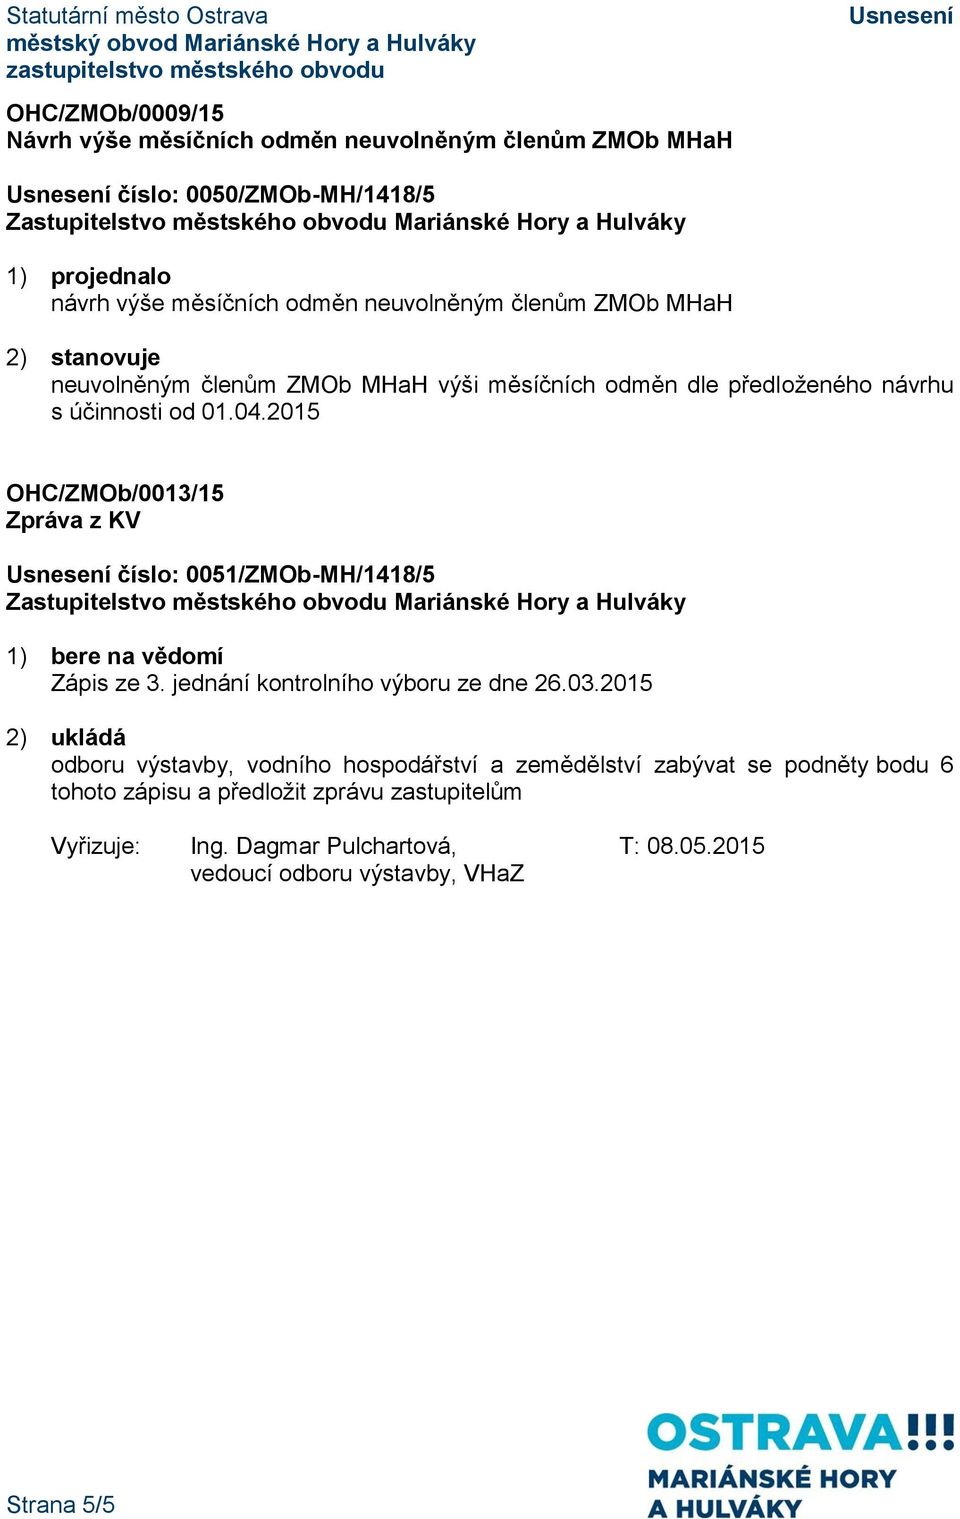 2015 OHC/ZMOb/0013/15 Zpráva z KV číslo: 0051/ZMOb-MH/1418/5 1) bere na vědomí Zápis ze 3. jednání kontrolního výboru ze dne 26.03.